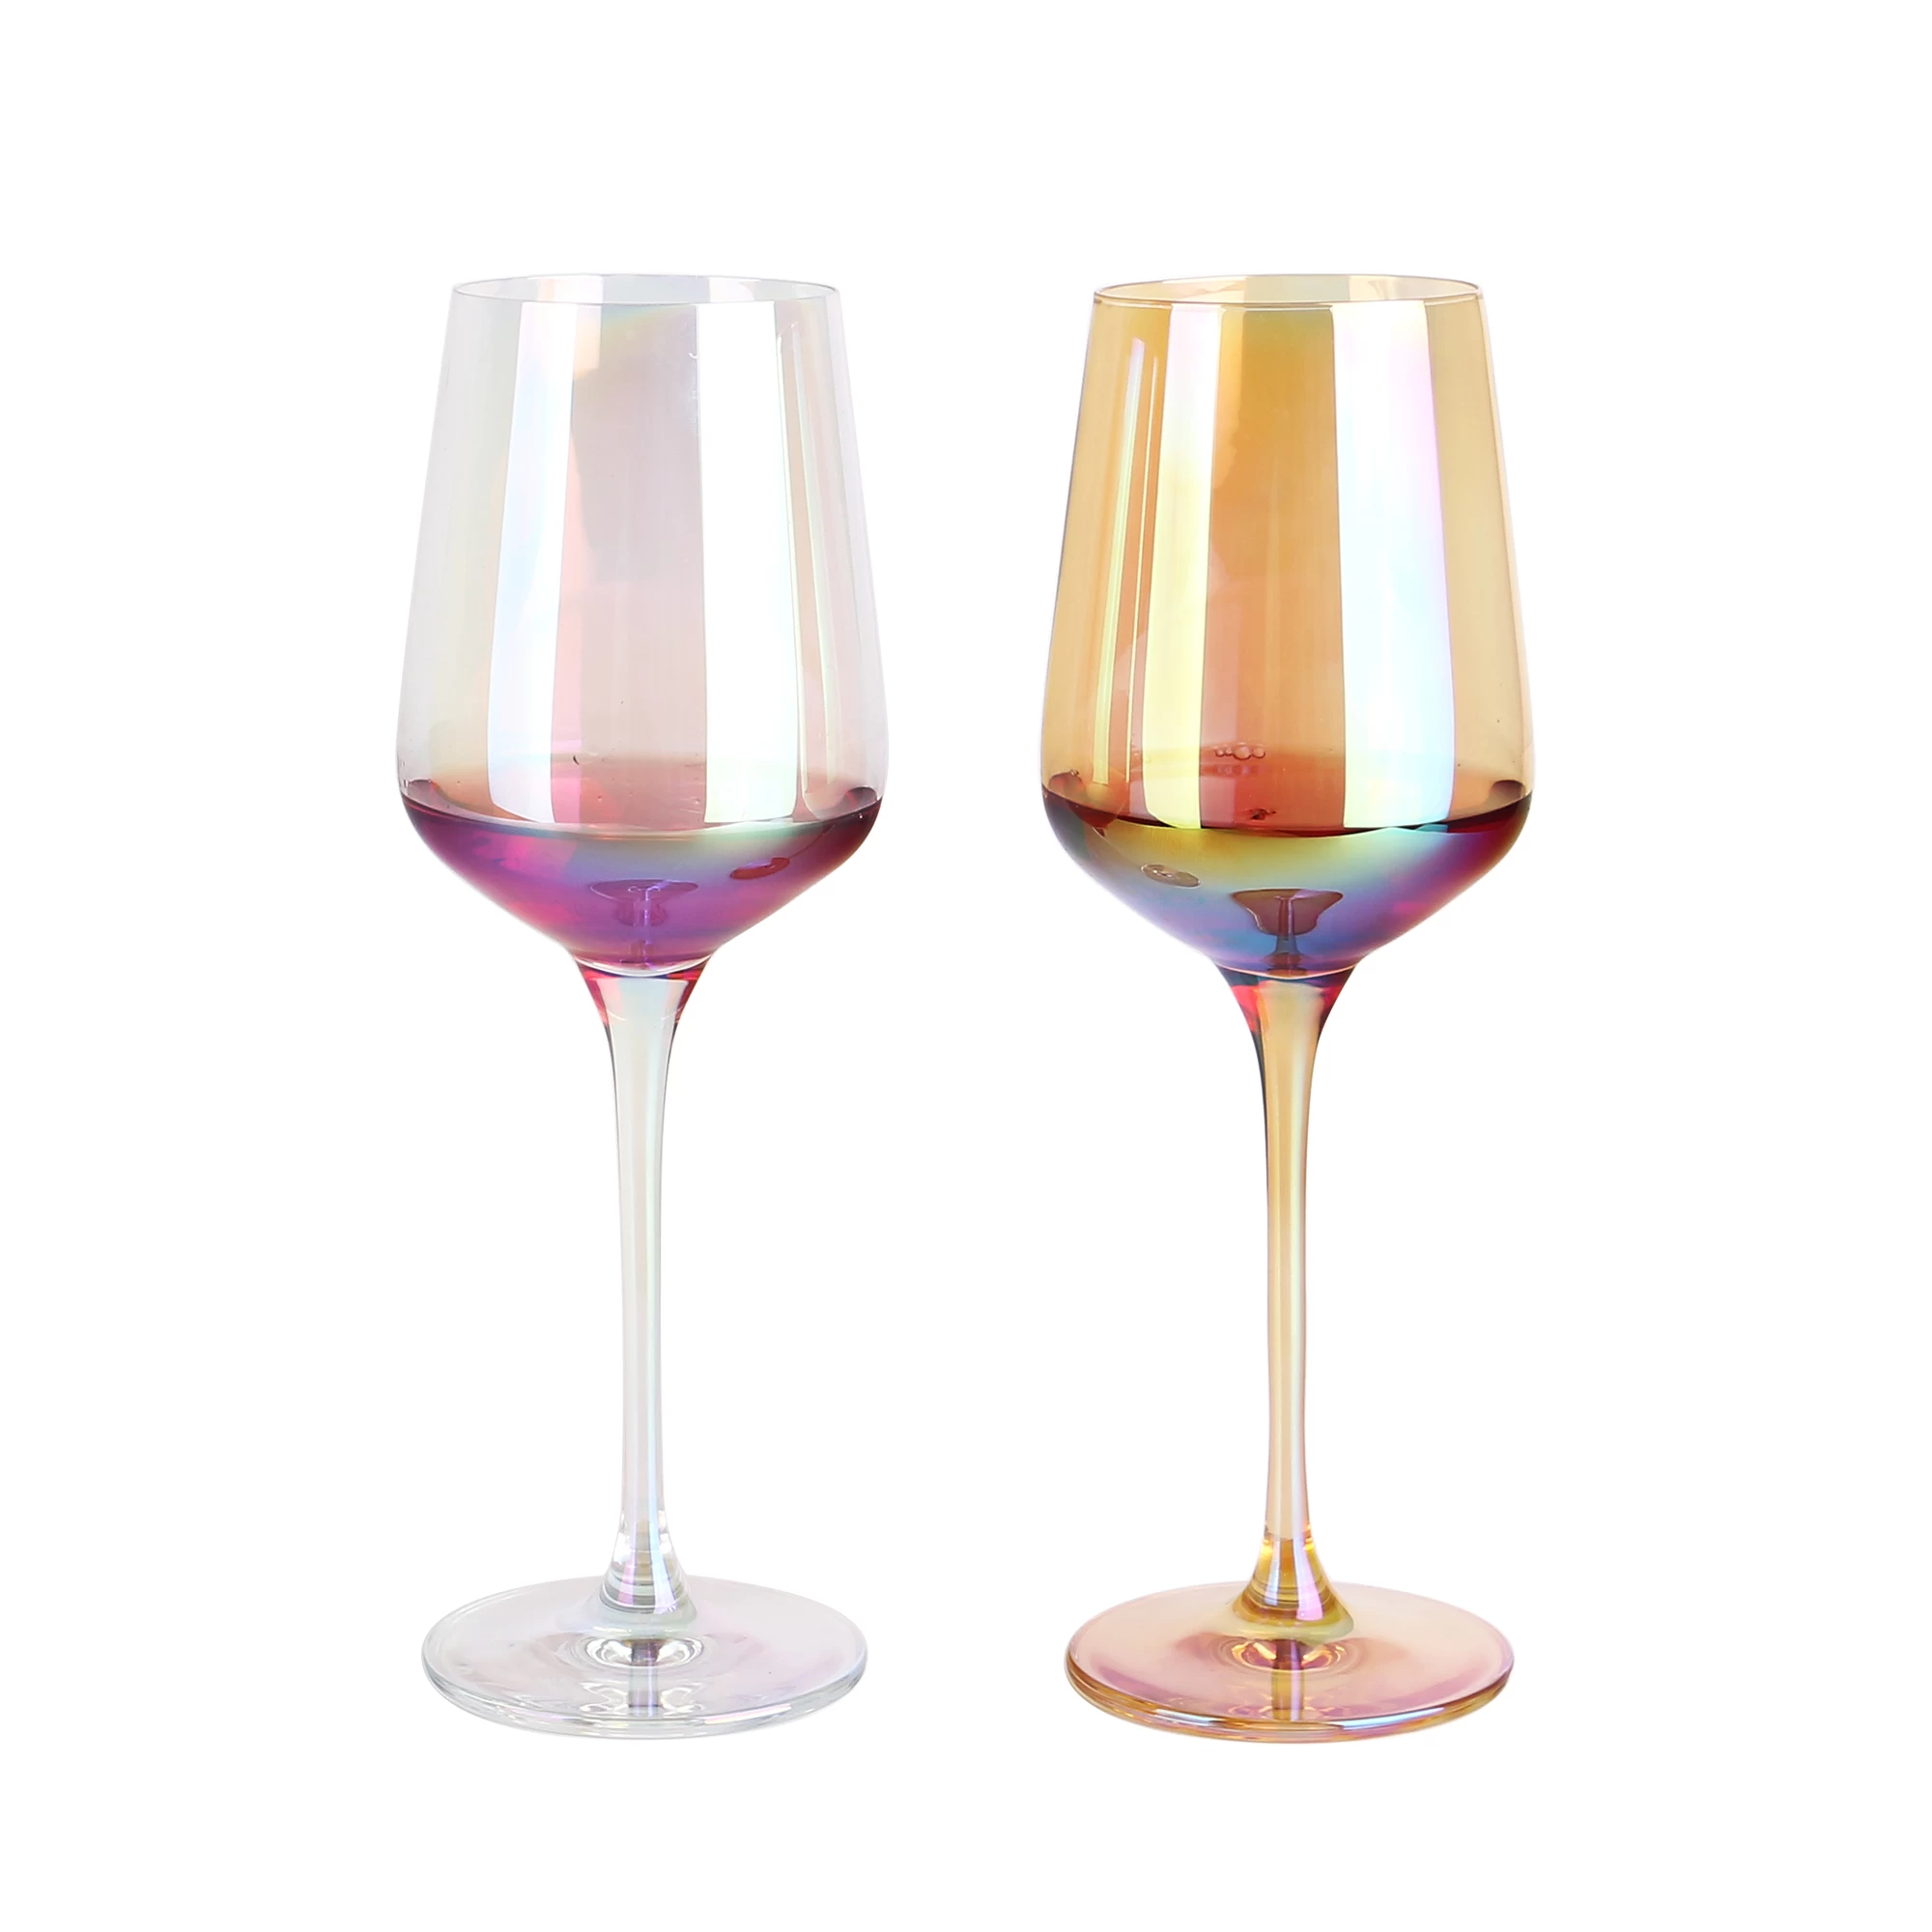 02 Colored Wine Glasses Wholesale